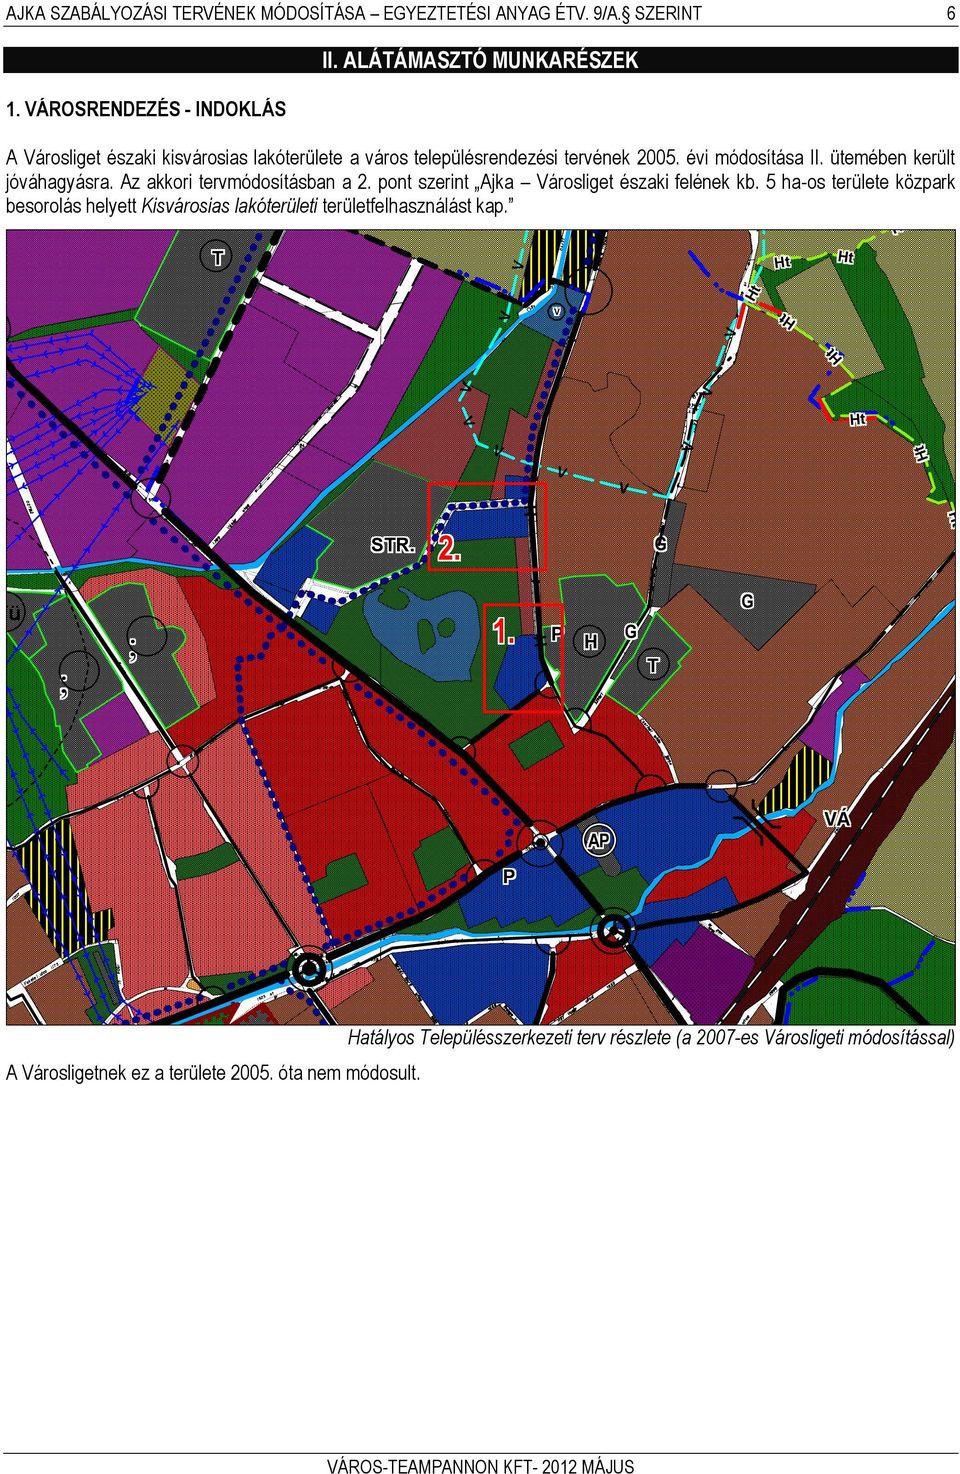 Az akkori tervmódosításban a 2. pont szerint Ajka árosliget északi felének kb. 5 ha-os területe közpark besorolás helyett Kisvárosias lakóterületi területfelhasználást kap.